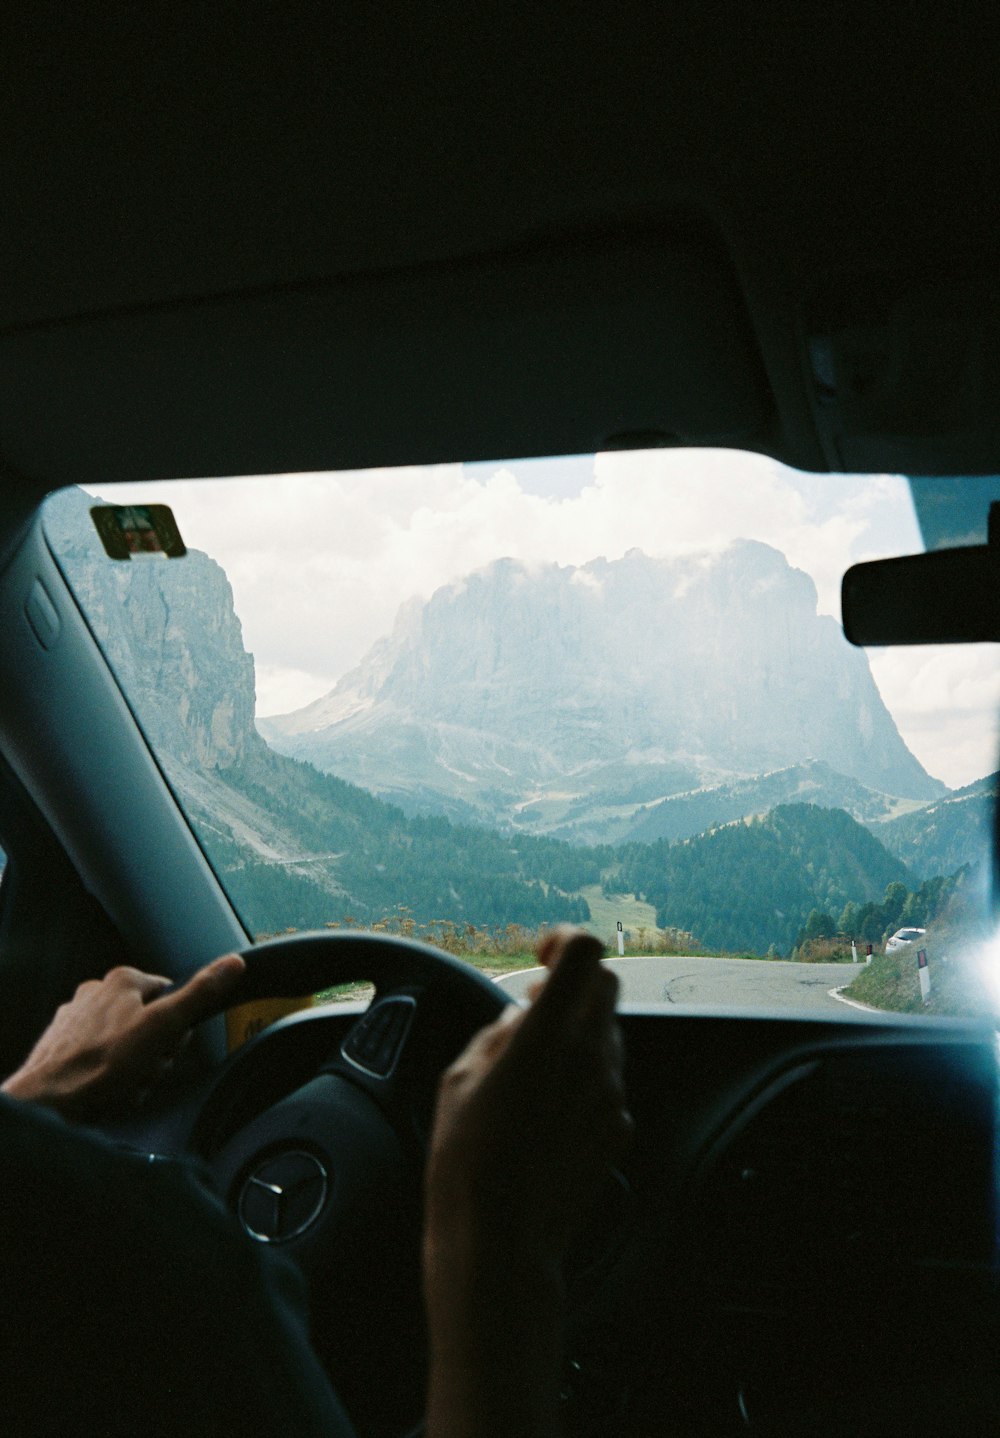 Una persona conduciendo un coche con montañas en el fondo